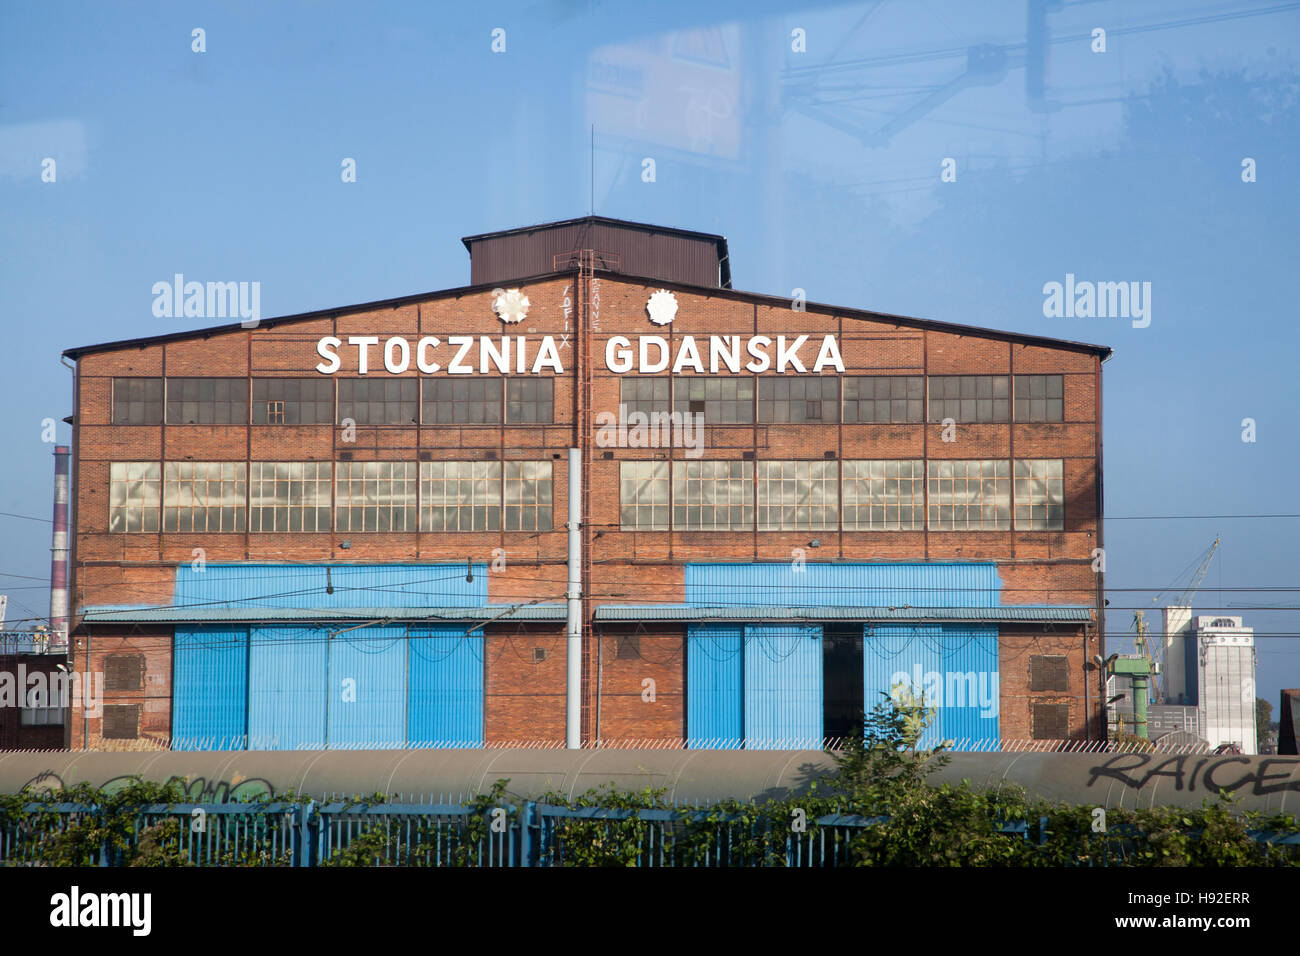 Vue d'une partie de l'ancien chantier de construction navale à Gdansk Pologne sur la côte de la mer Baltique. Banque D'Images